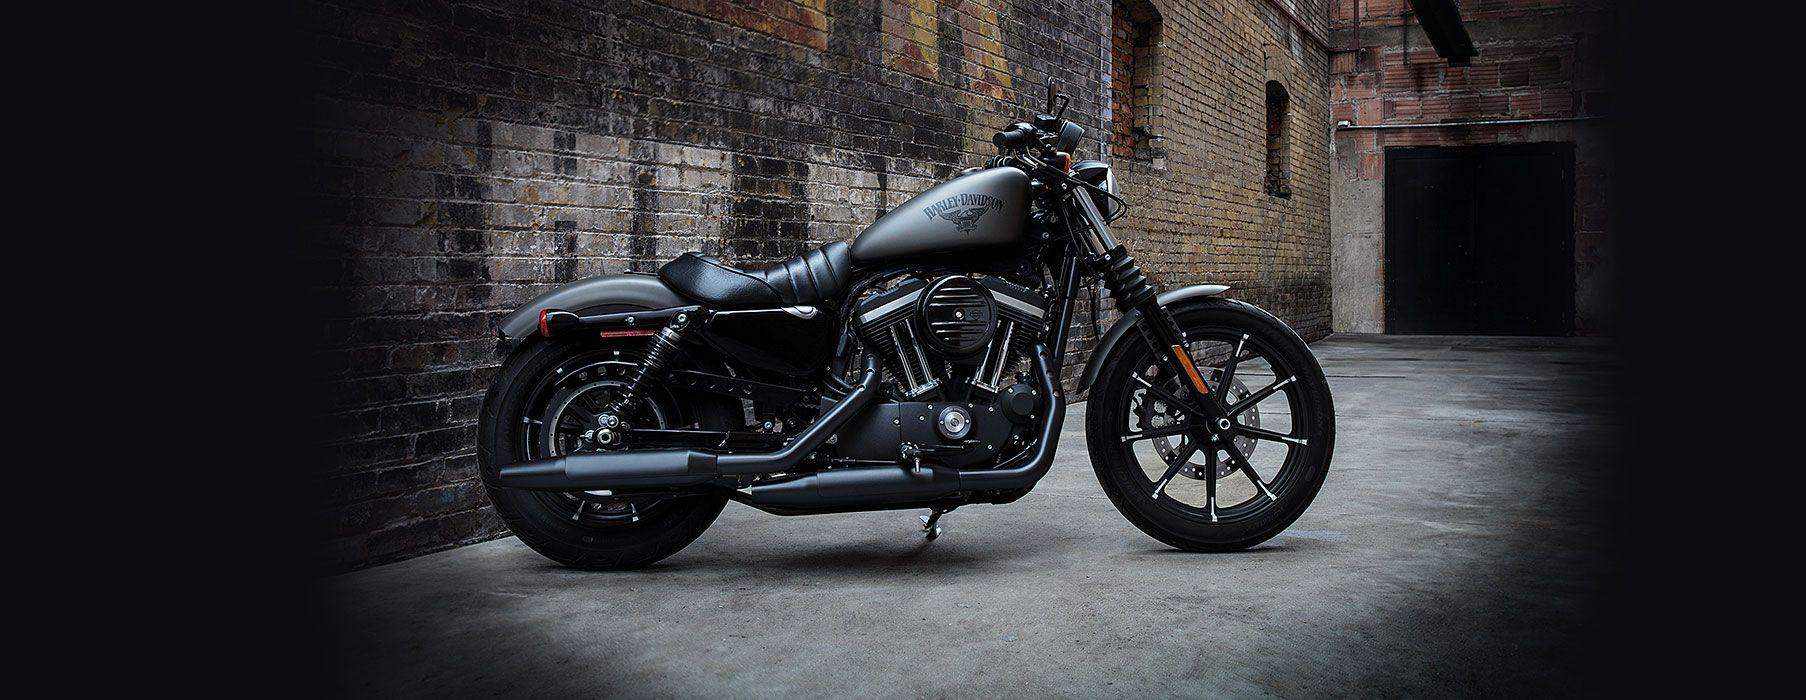 Iron 883™ Motorcycles. Northwest Harley Davidson®